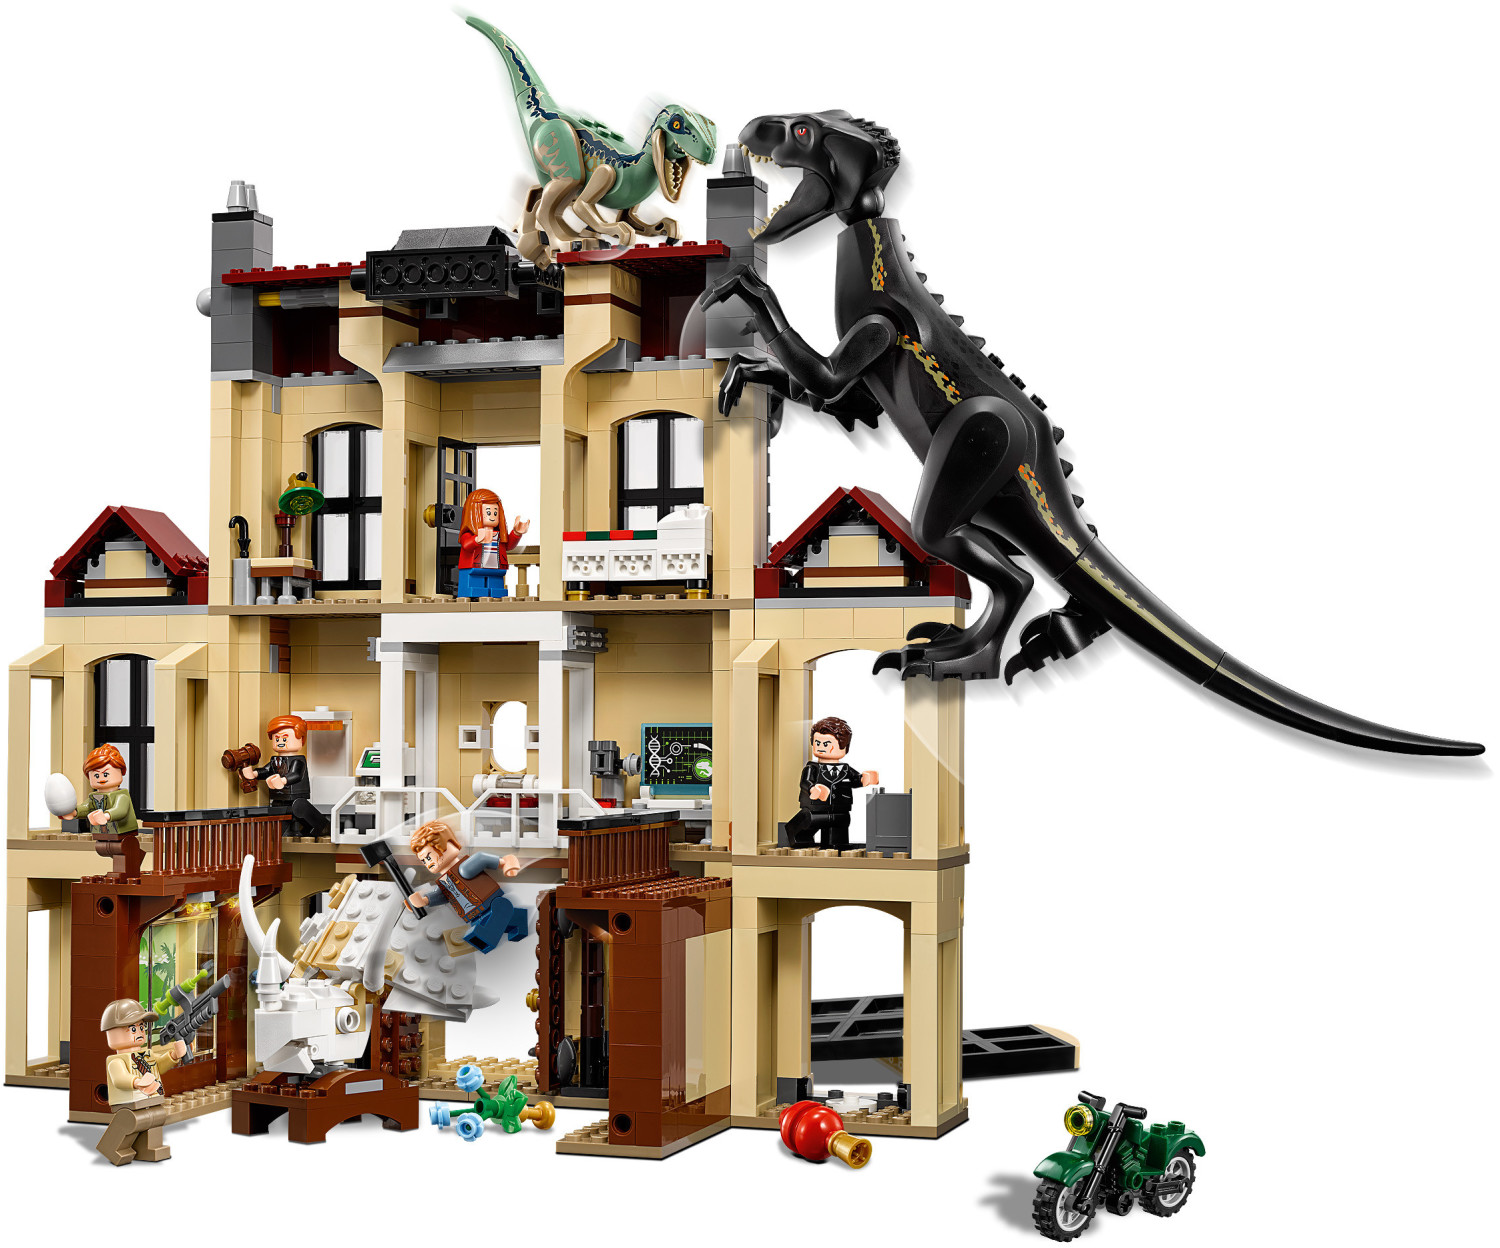 LEGO Jurassic World 75930 pas cher, La fureur de Indoraptor à